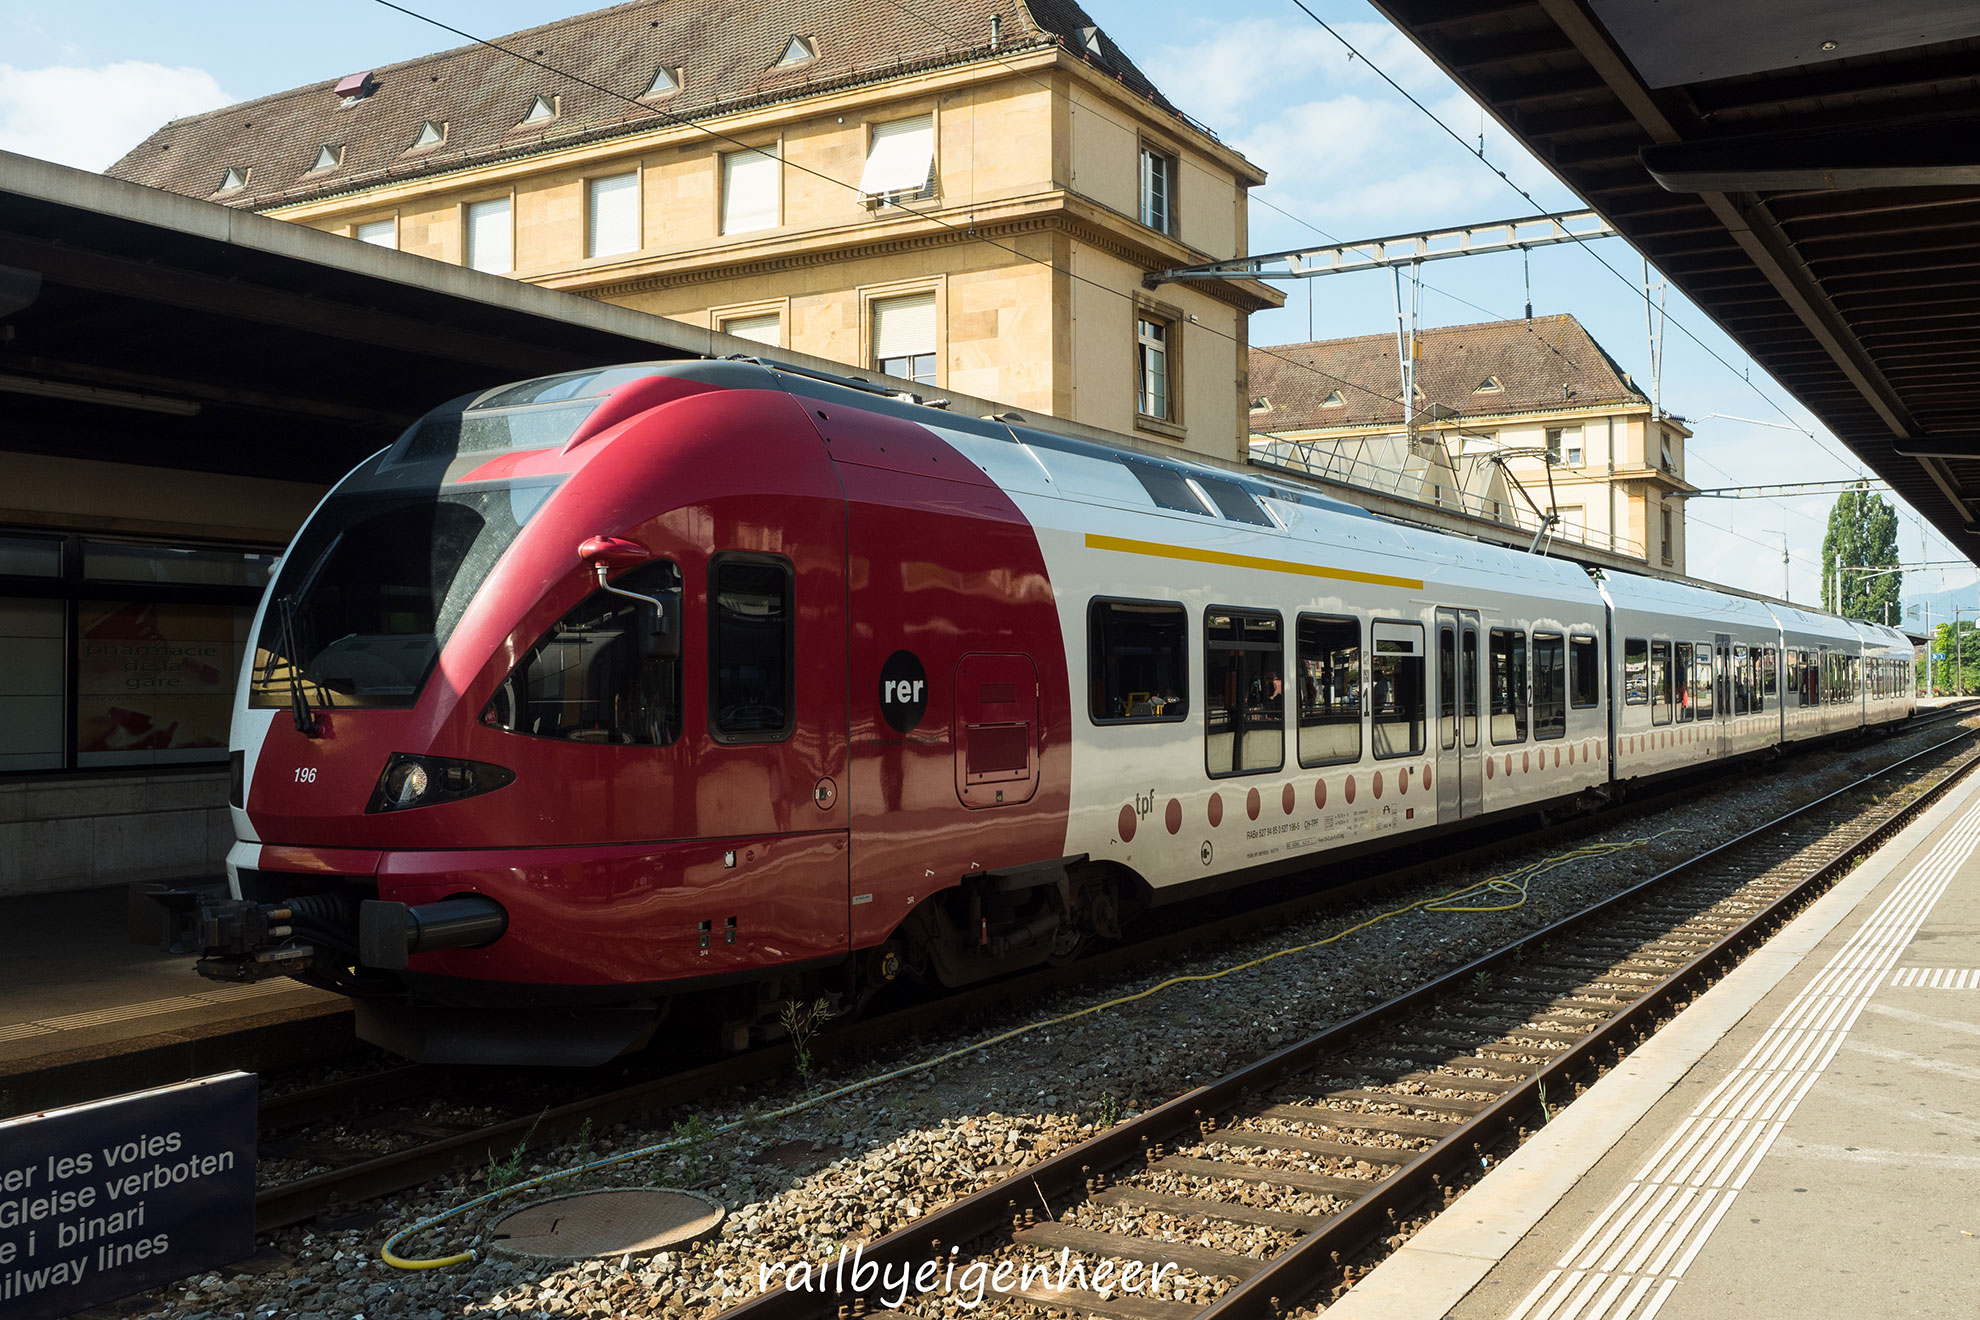 Train FLIRT, circulant couramment sur le RER fribourgeois. La mise en service du RER Fribourg | Freiburg a eu lieu la 11 décembre 2011 avec un train direct (RE) reliant Bulle, Romont et Fribourg toutes les demi-heures, et avec un prolongement jusqu’à Berne chaque heure.